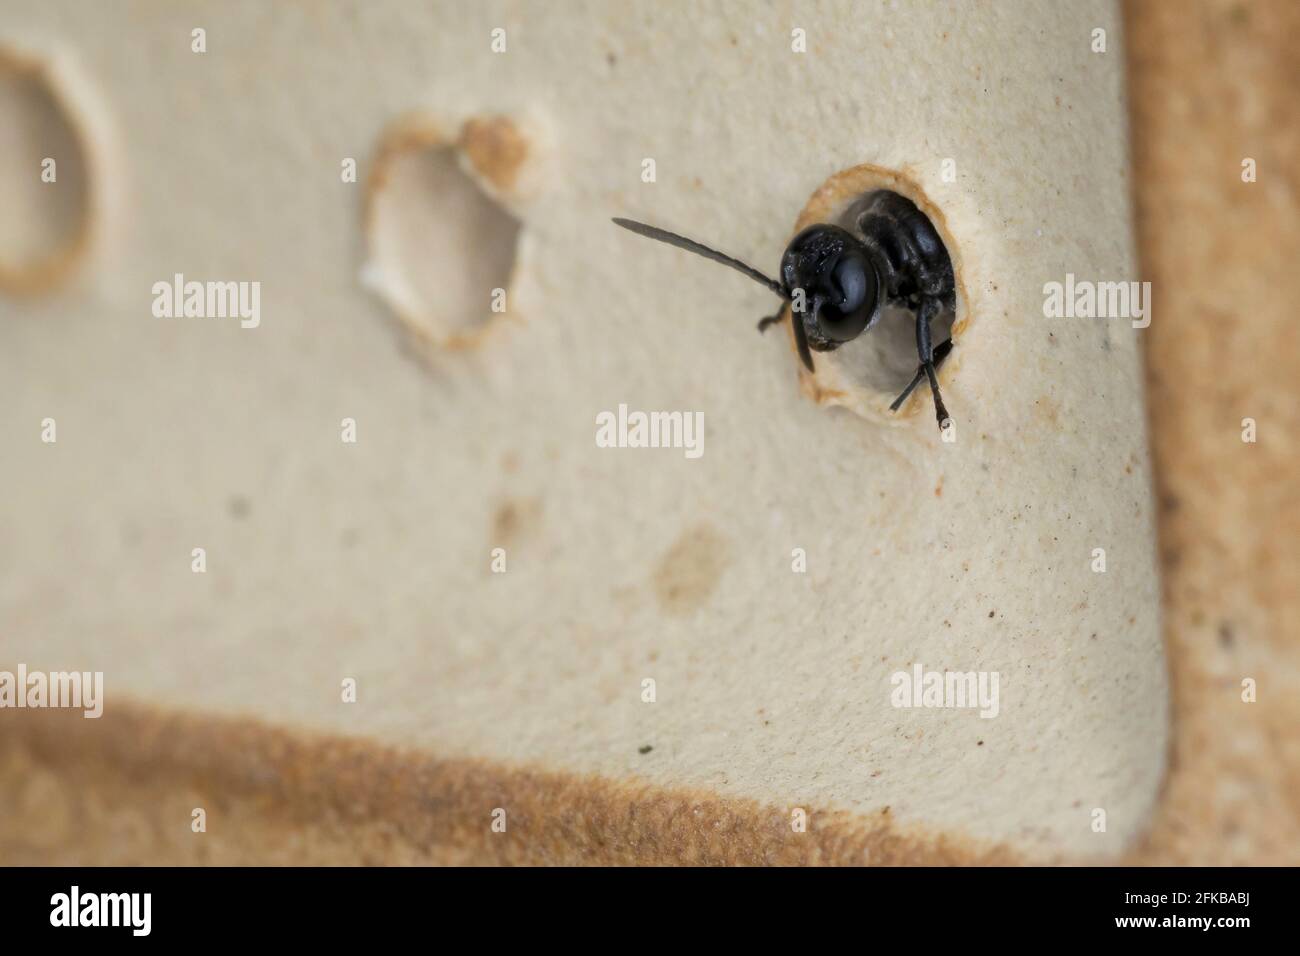 Dauber de barro de pipa de órgano, avispa de digger (Trypoxylon cf. Figura), en un tubo de anidación de un hotel de abeja, Alemania Foto de stock